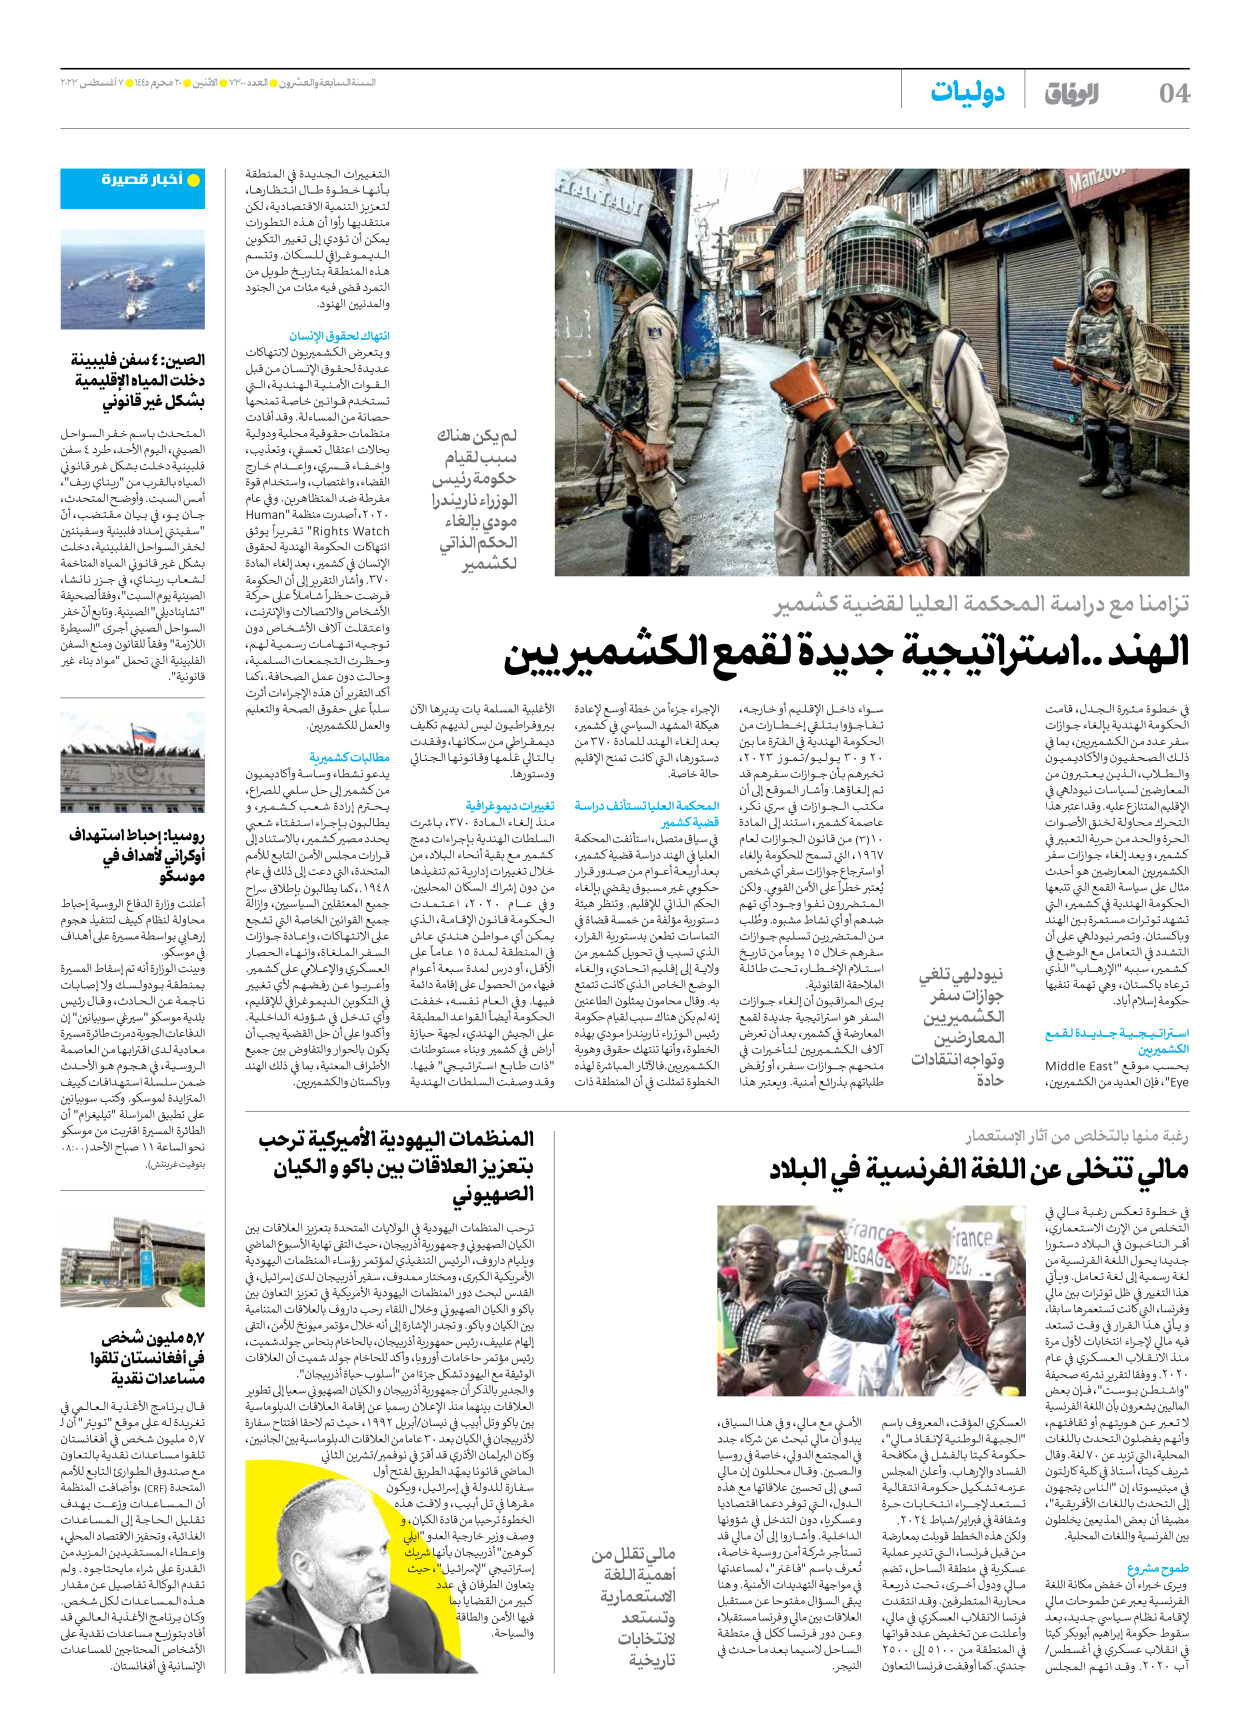 صحیفة ایران الدولیة الوفاق - العدد سبعة آلاف وثلاثمائة - ٠٧ أغسطس ٢٠٢٣ - الصفحة ٤